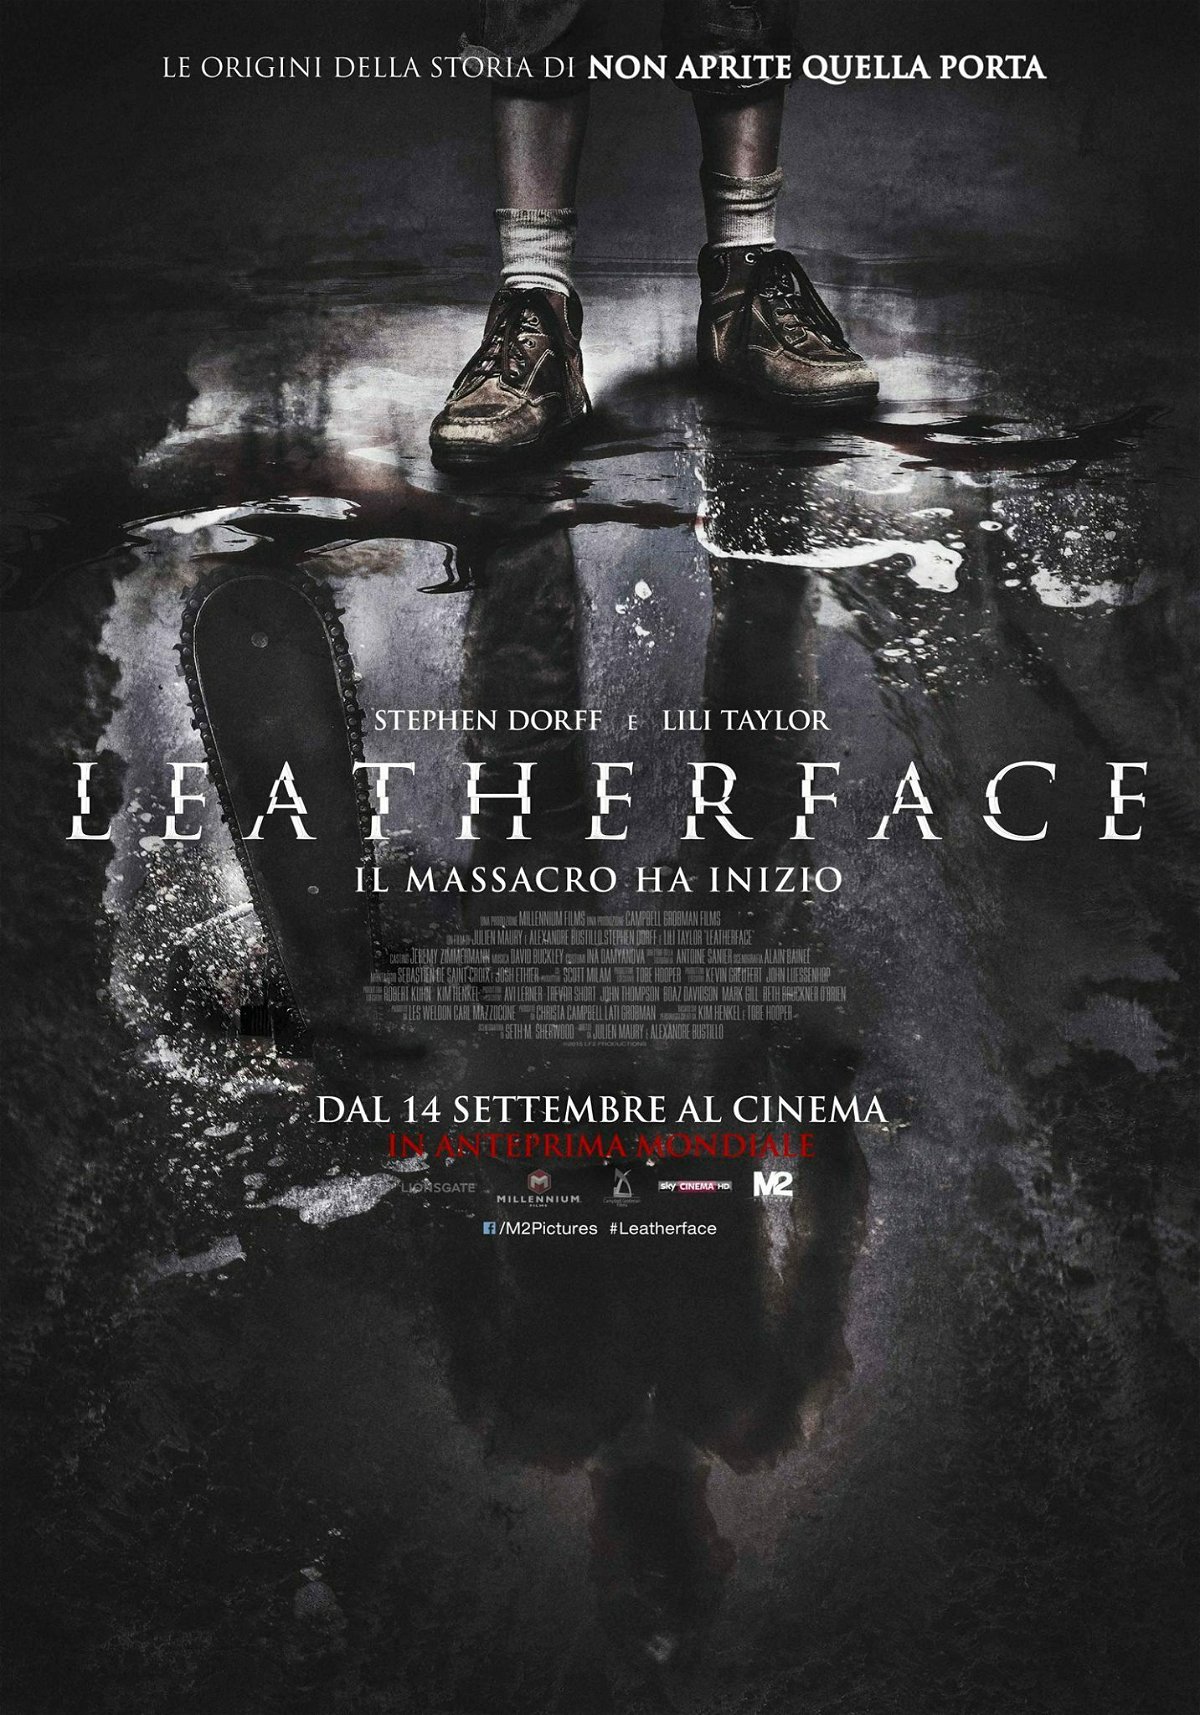 Leatherface: in anteprima mondiale dal 14 settembre al cinema